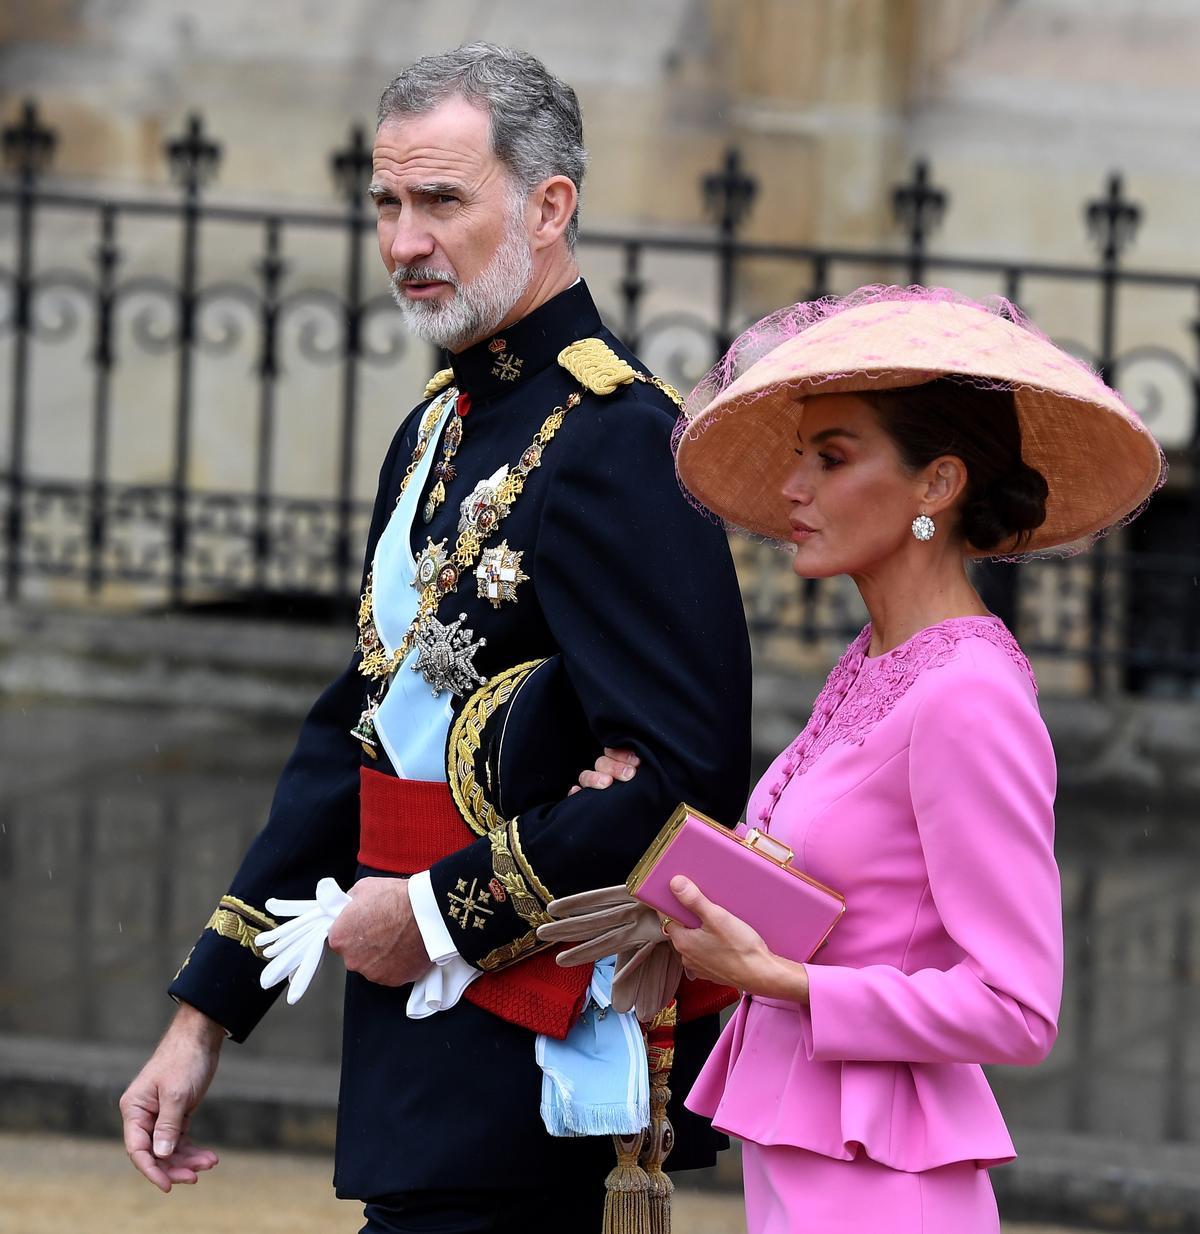 Los reyes Felipe VI y Letizia asisten a la coronación de Carlos III, en imágenes